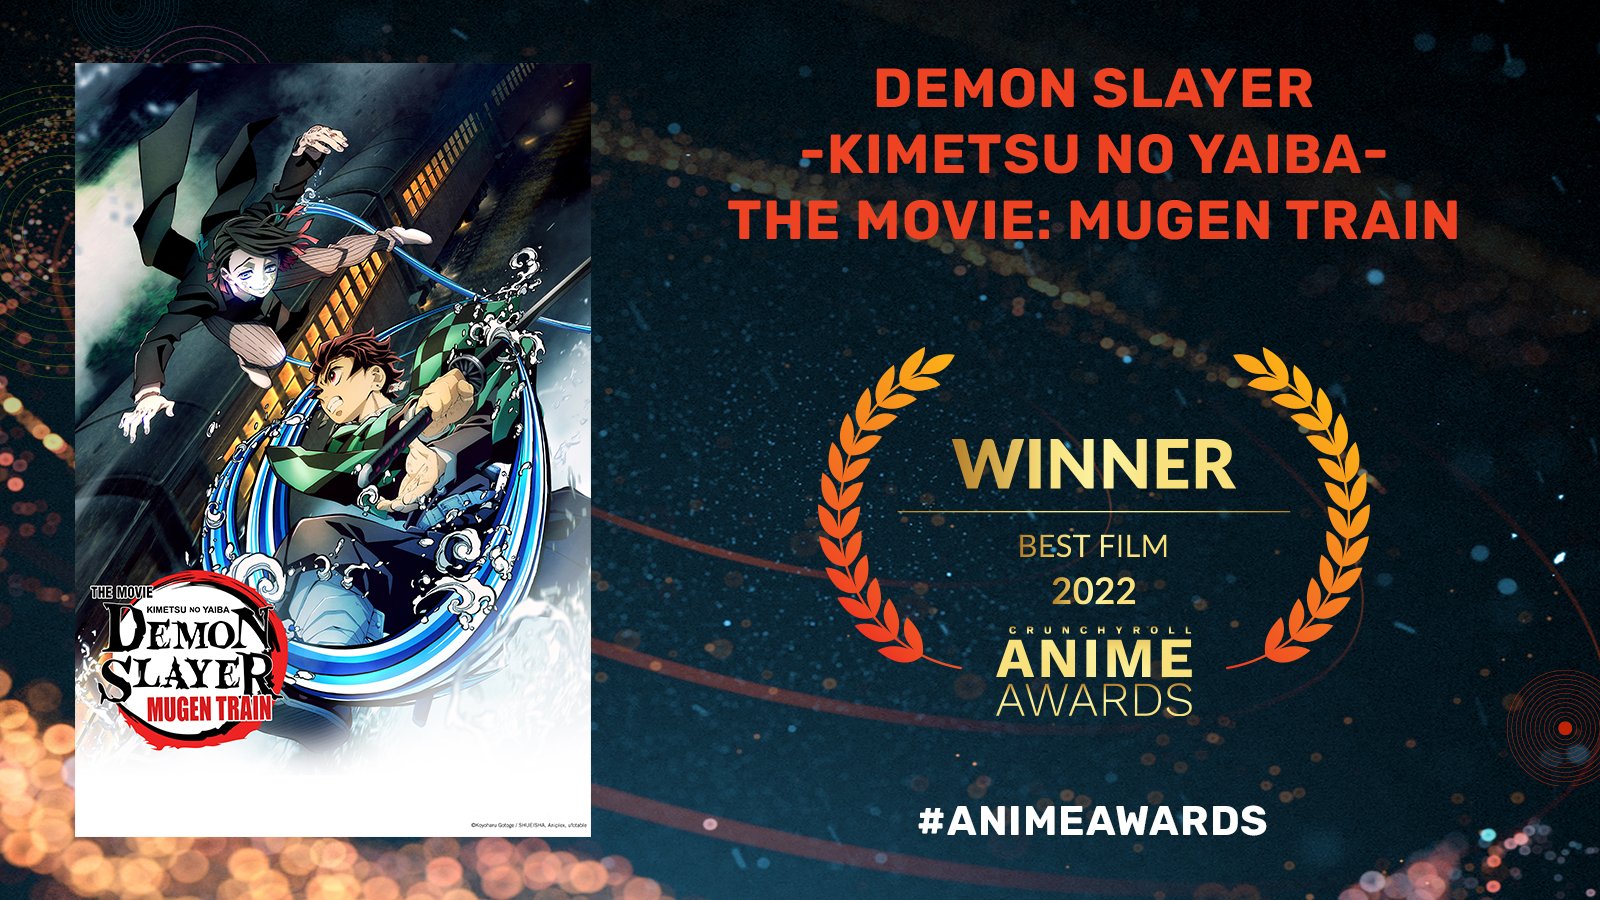 Demon Slayer no Anime Awards - Demon Slayer Brasil